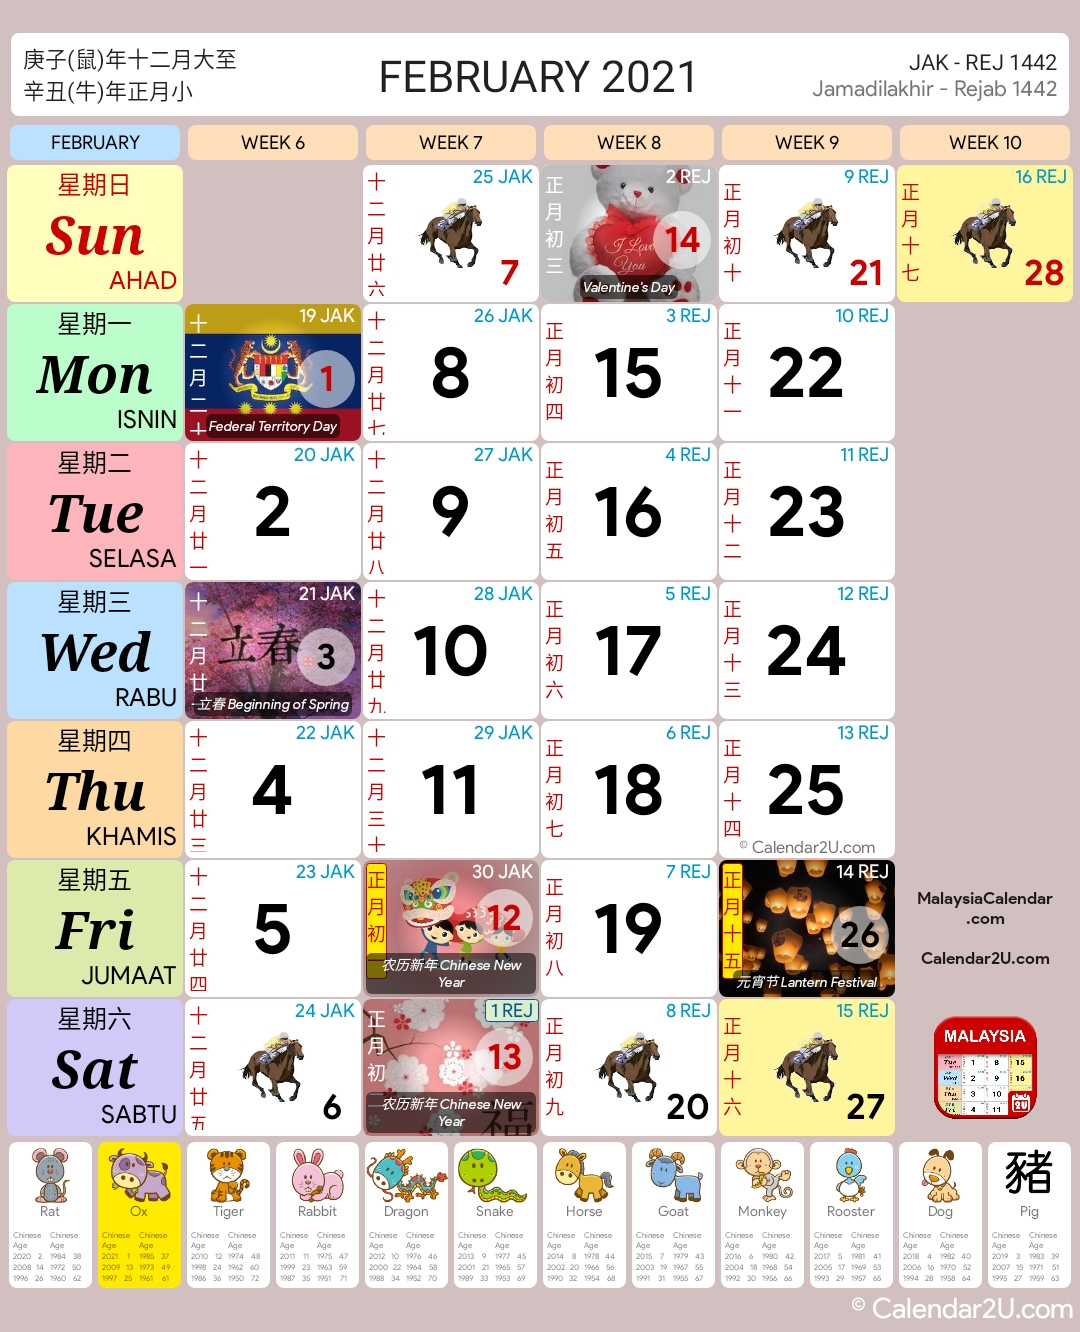 Lunar Year 2021 Calendar | Printable Calendars 2021 November 2021 Lunar Calendar